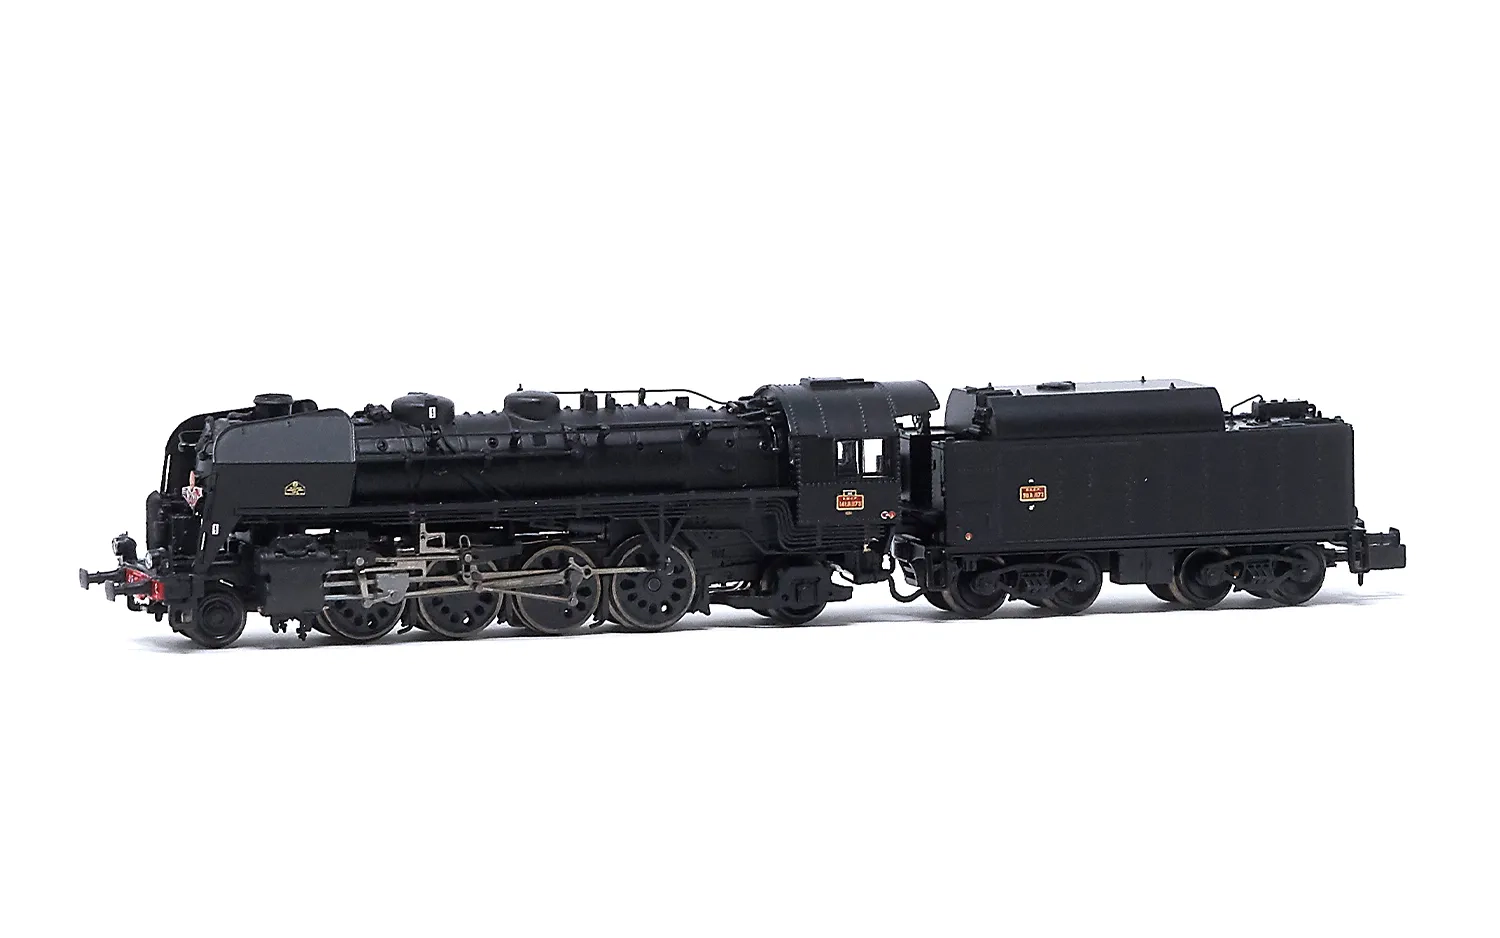 SNCF, Dampflokomotive 141 R 1173 "Mistral", mit Boxpok-Rädern auf allen Treib-und Kuppelachsen, Tender mit großem Ölbunker, in schwarzer Lackierung, Ep. III, mit DCC-Sounddecoder